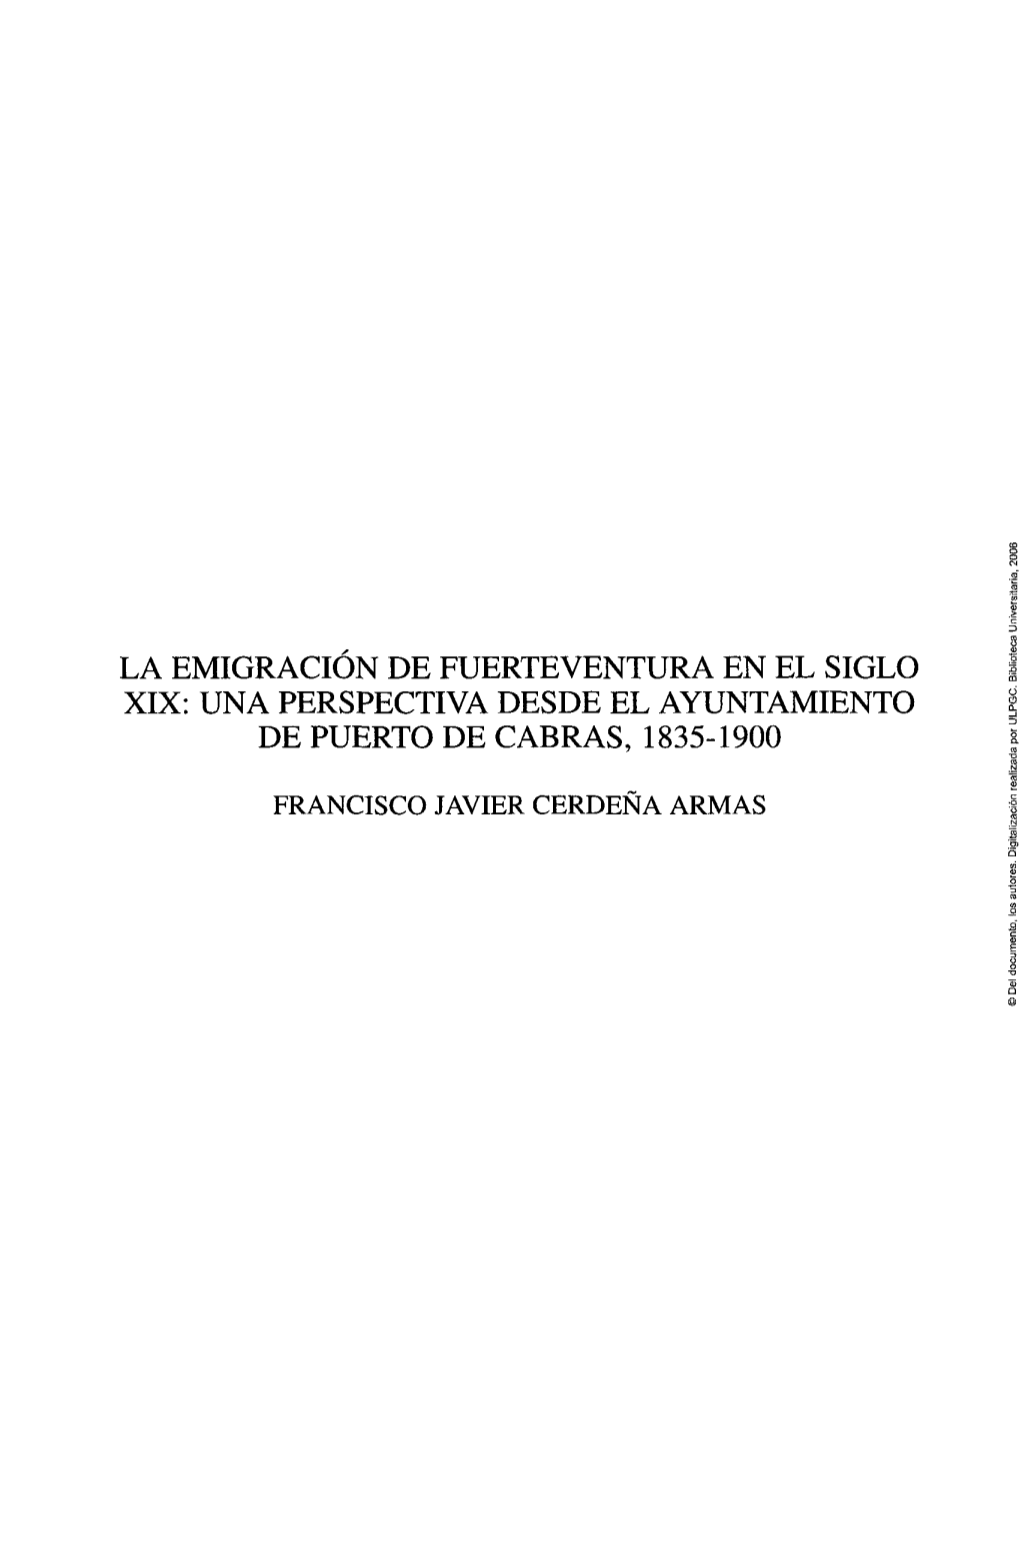 La Emigración De Fuerteventura En El Siglo Xix: Una Perspectiva Desde El Ayuntamiento De Puerto De Cabras, 1835-1900